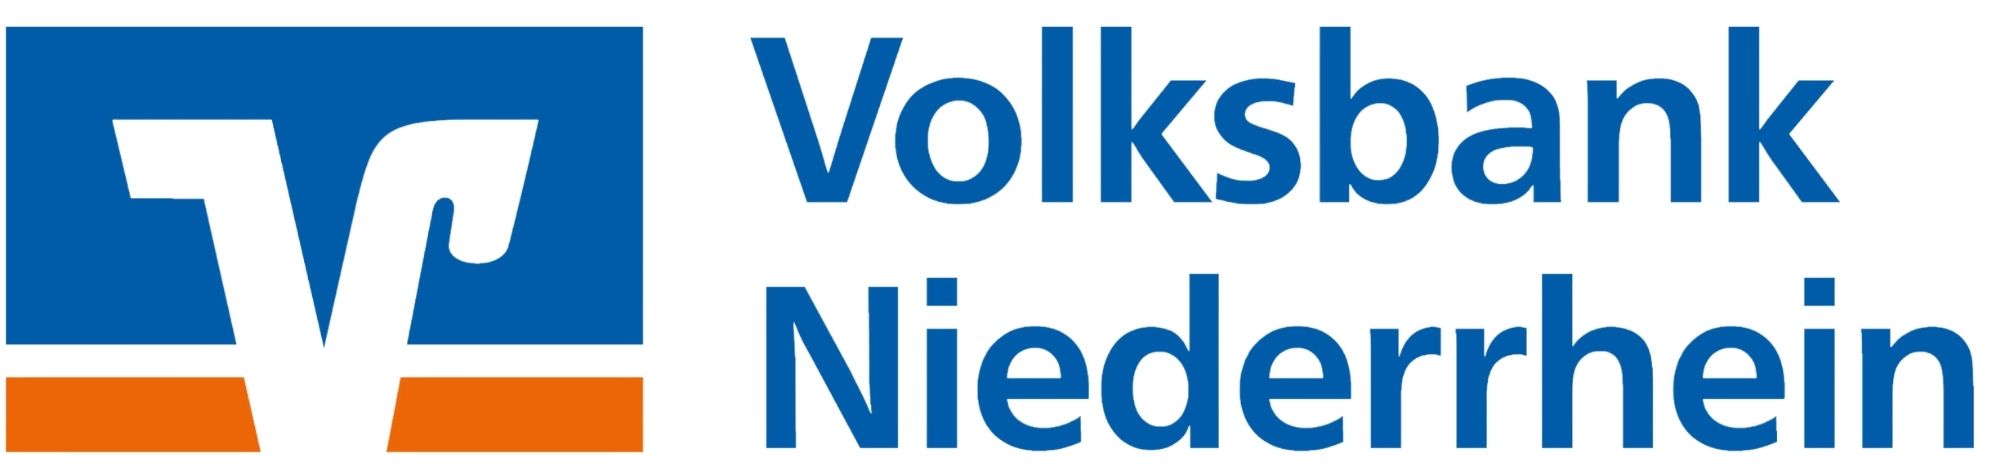 Volksbank Niederrhein